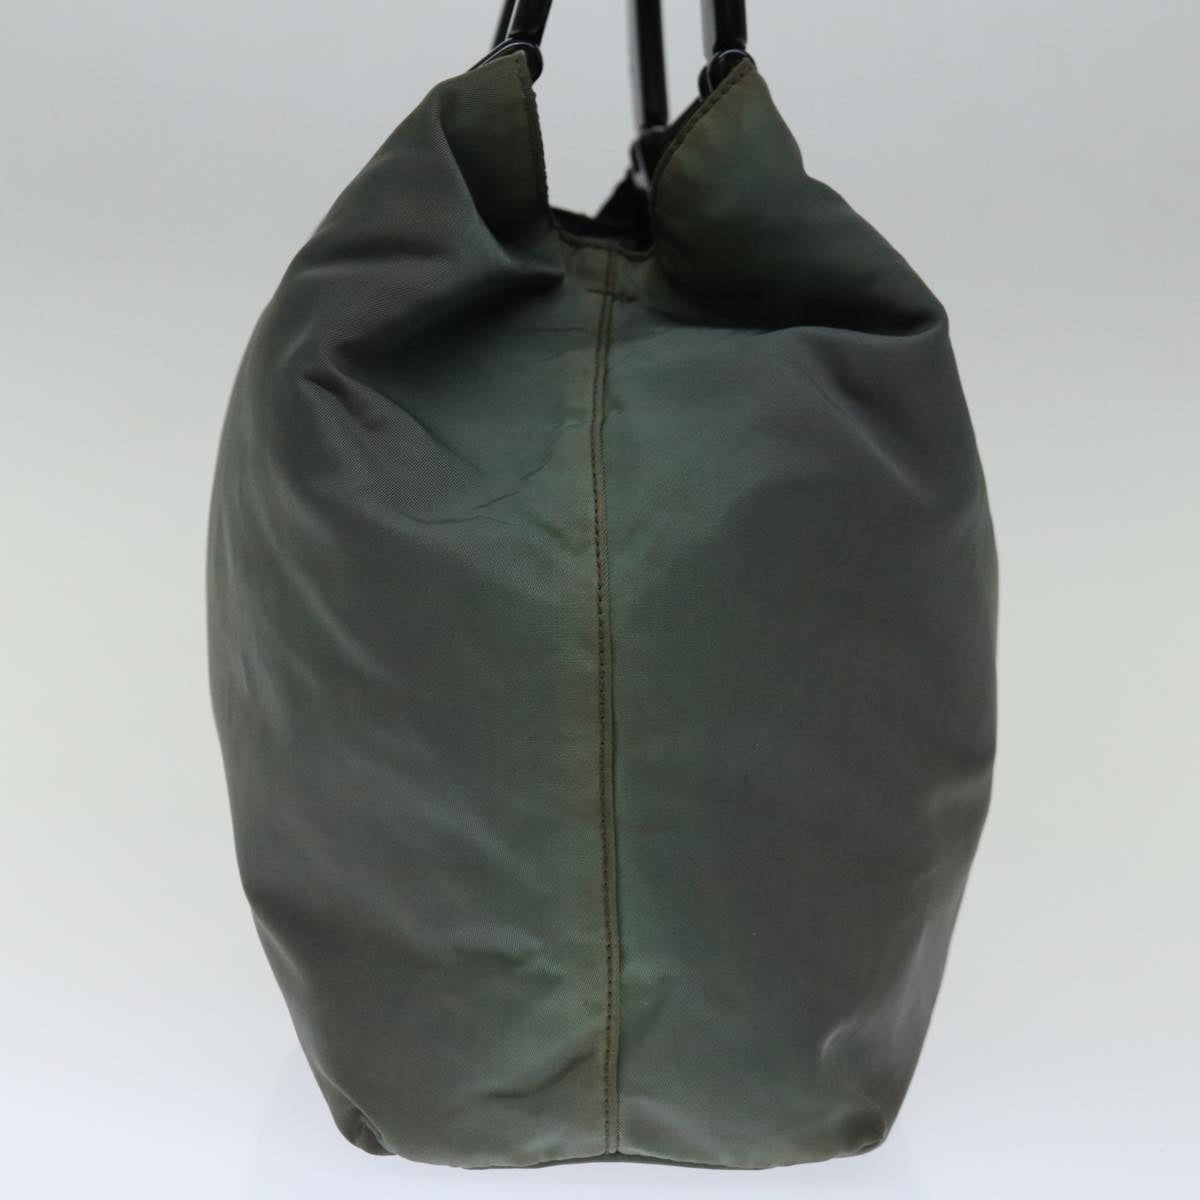 PRADA Hand Bag Nylon Khaki Auth 72006